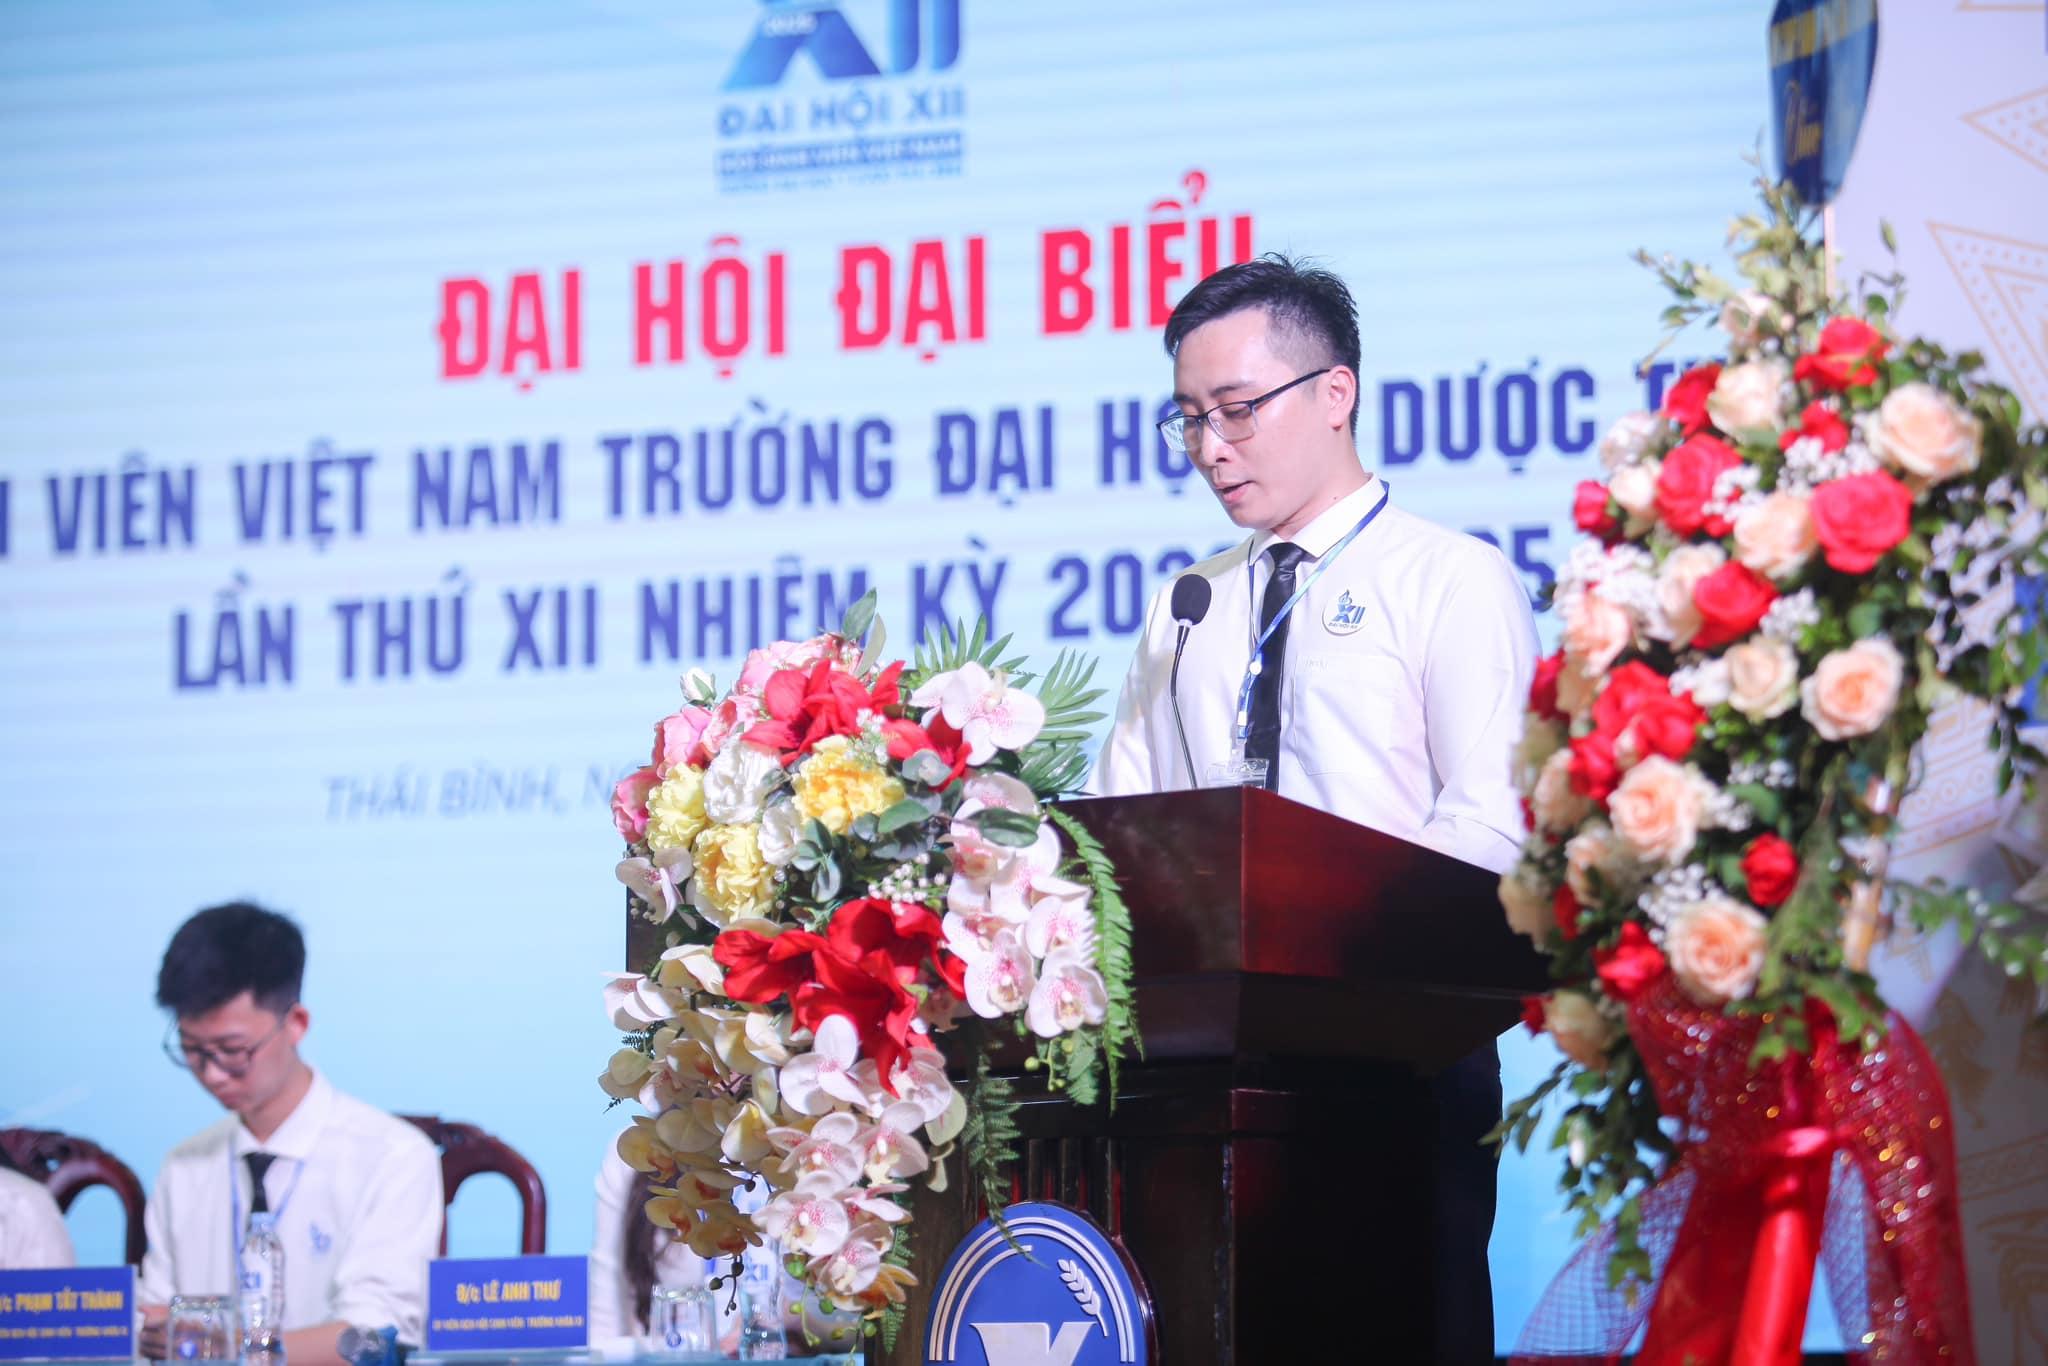 Đồng chí Phạm Tuấn Đạt thay mặt Đoàn Chủ tịch phát biểu khai mạc Đại hội